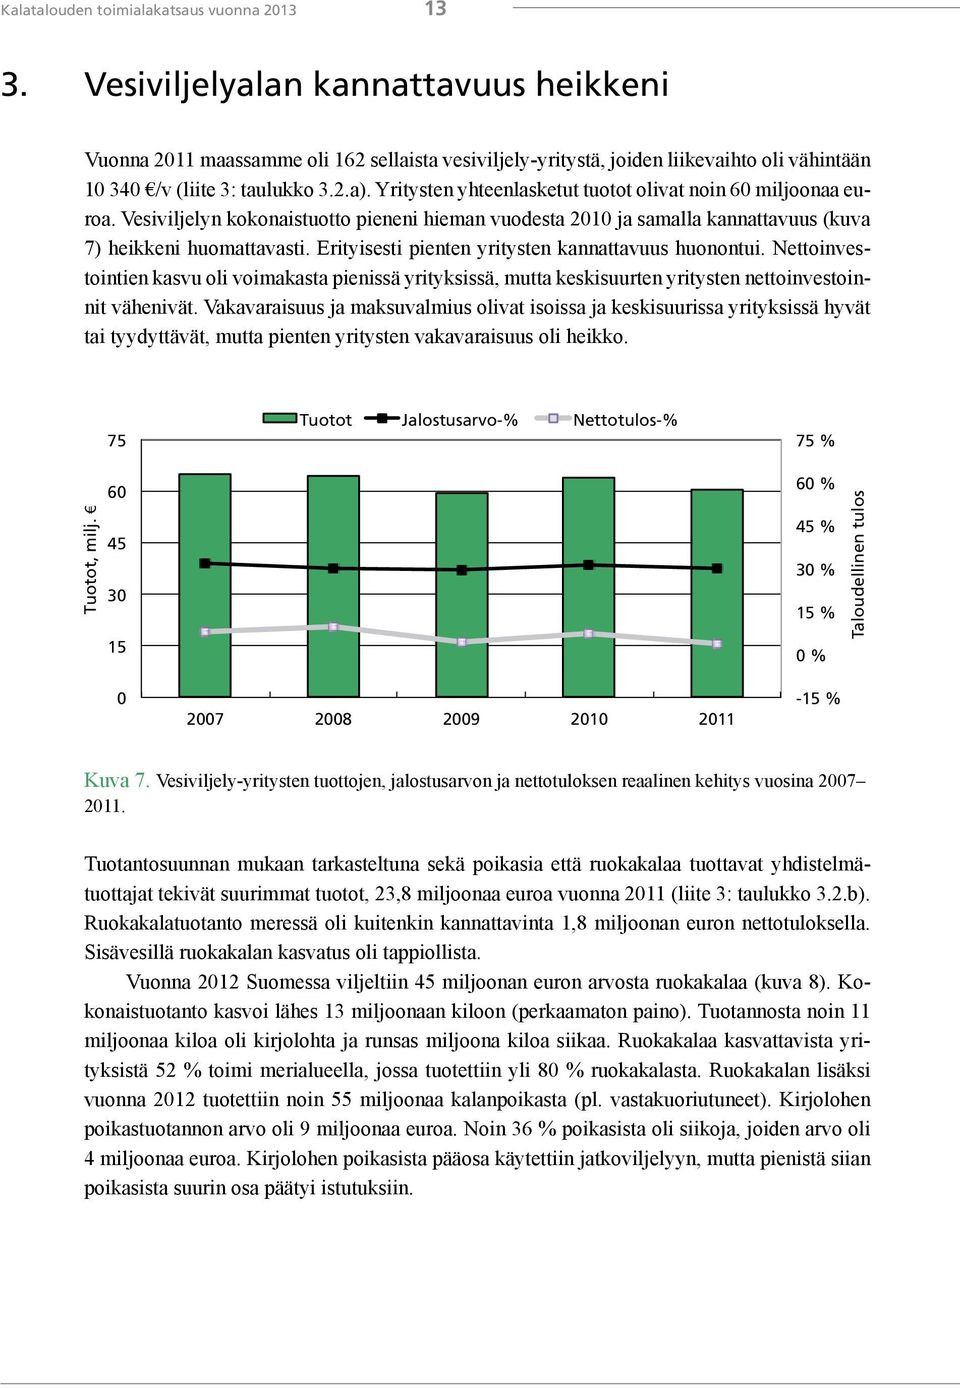 Yritysten yhteenlasketut tuotot olivat noin 6 miljoonaa euroa. Vesiviljelyn kokonaistuotto pieneni hieman vuodesta 21 ja samalla kannattavuus (kuva 7) heikkeni huomattavasti.